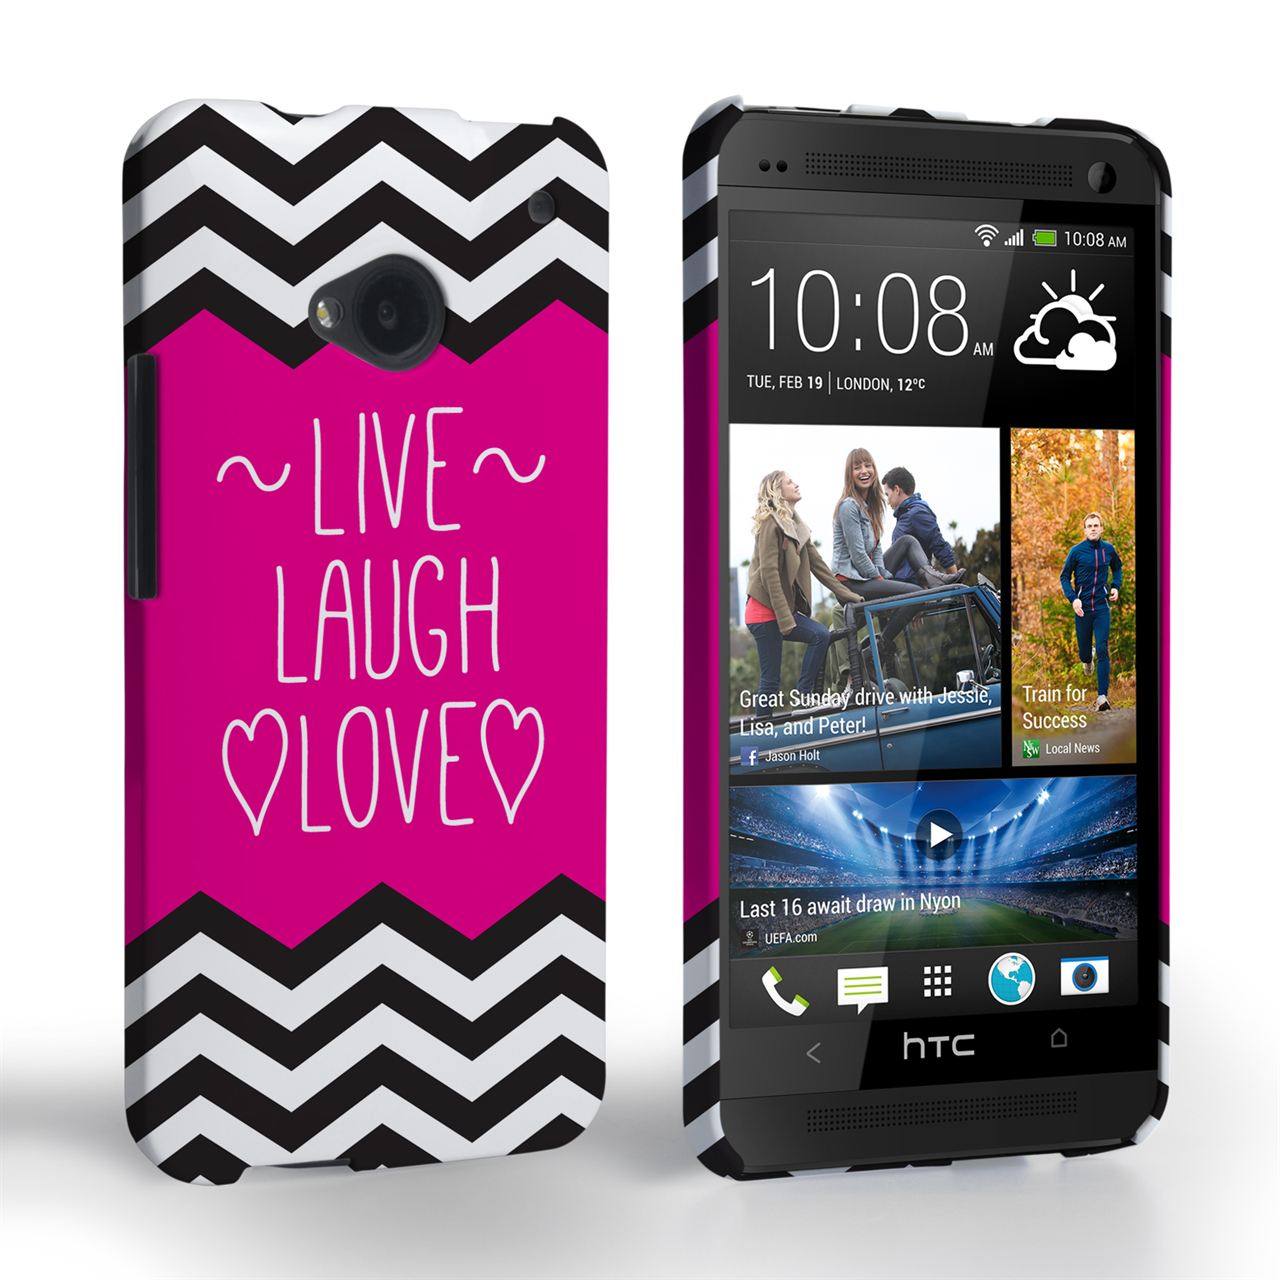 Caseflex HTC One Live Laugh Love Heart Case